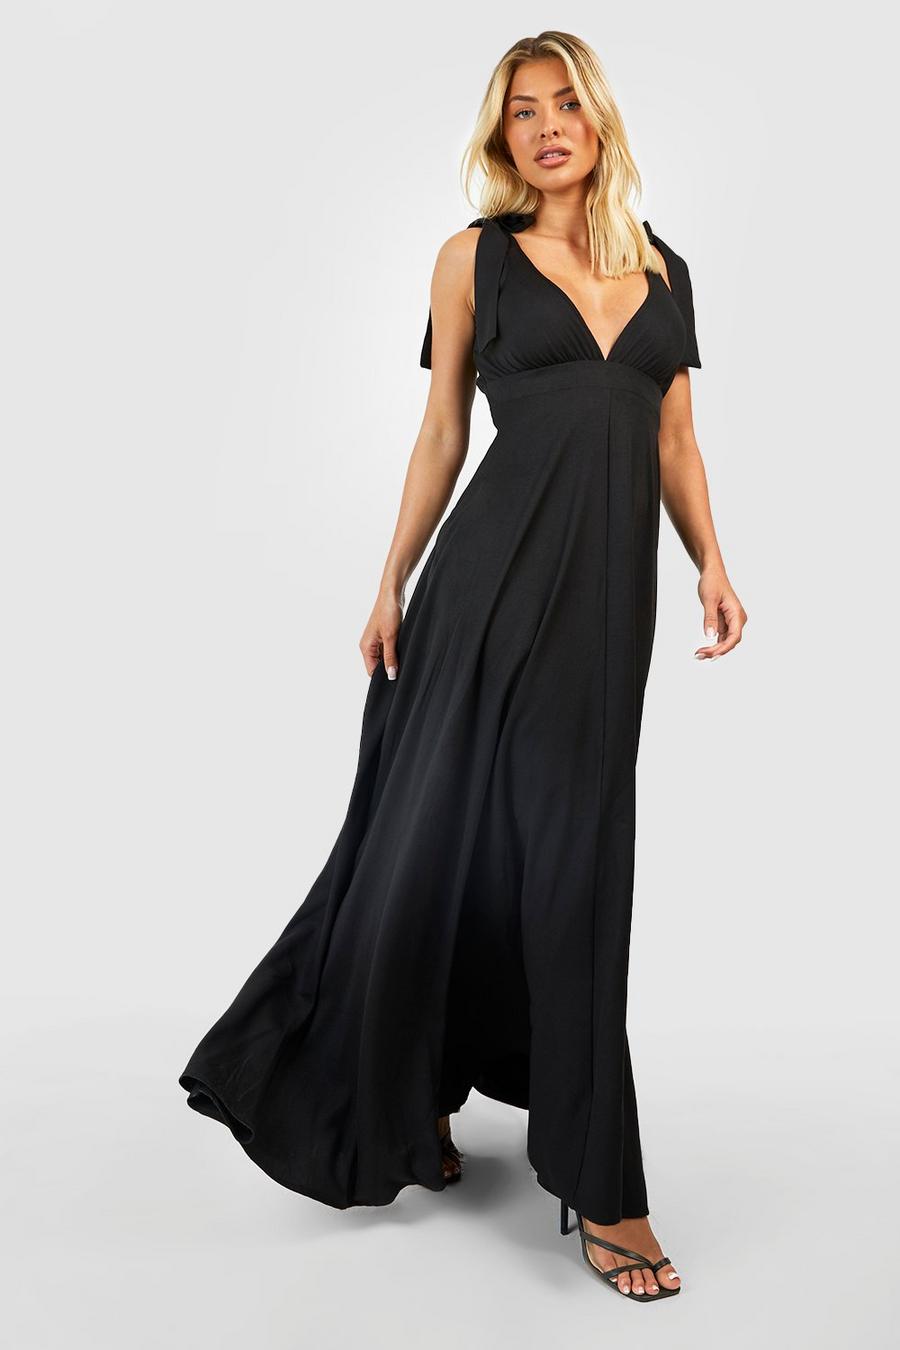 שחור nero שמלת מקסי עם מחשוף עמוק וכתפיות עם קשירה